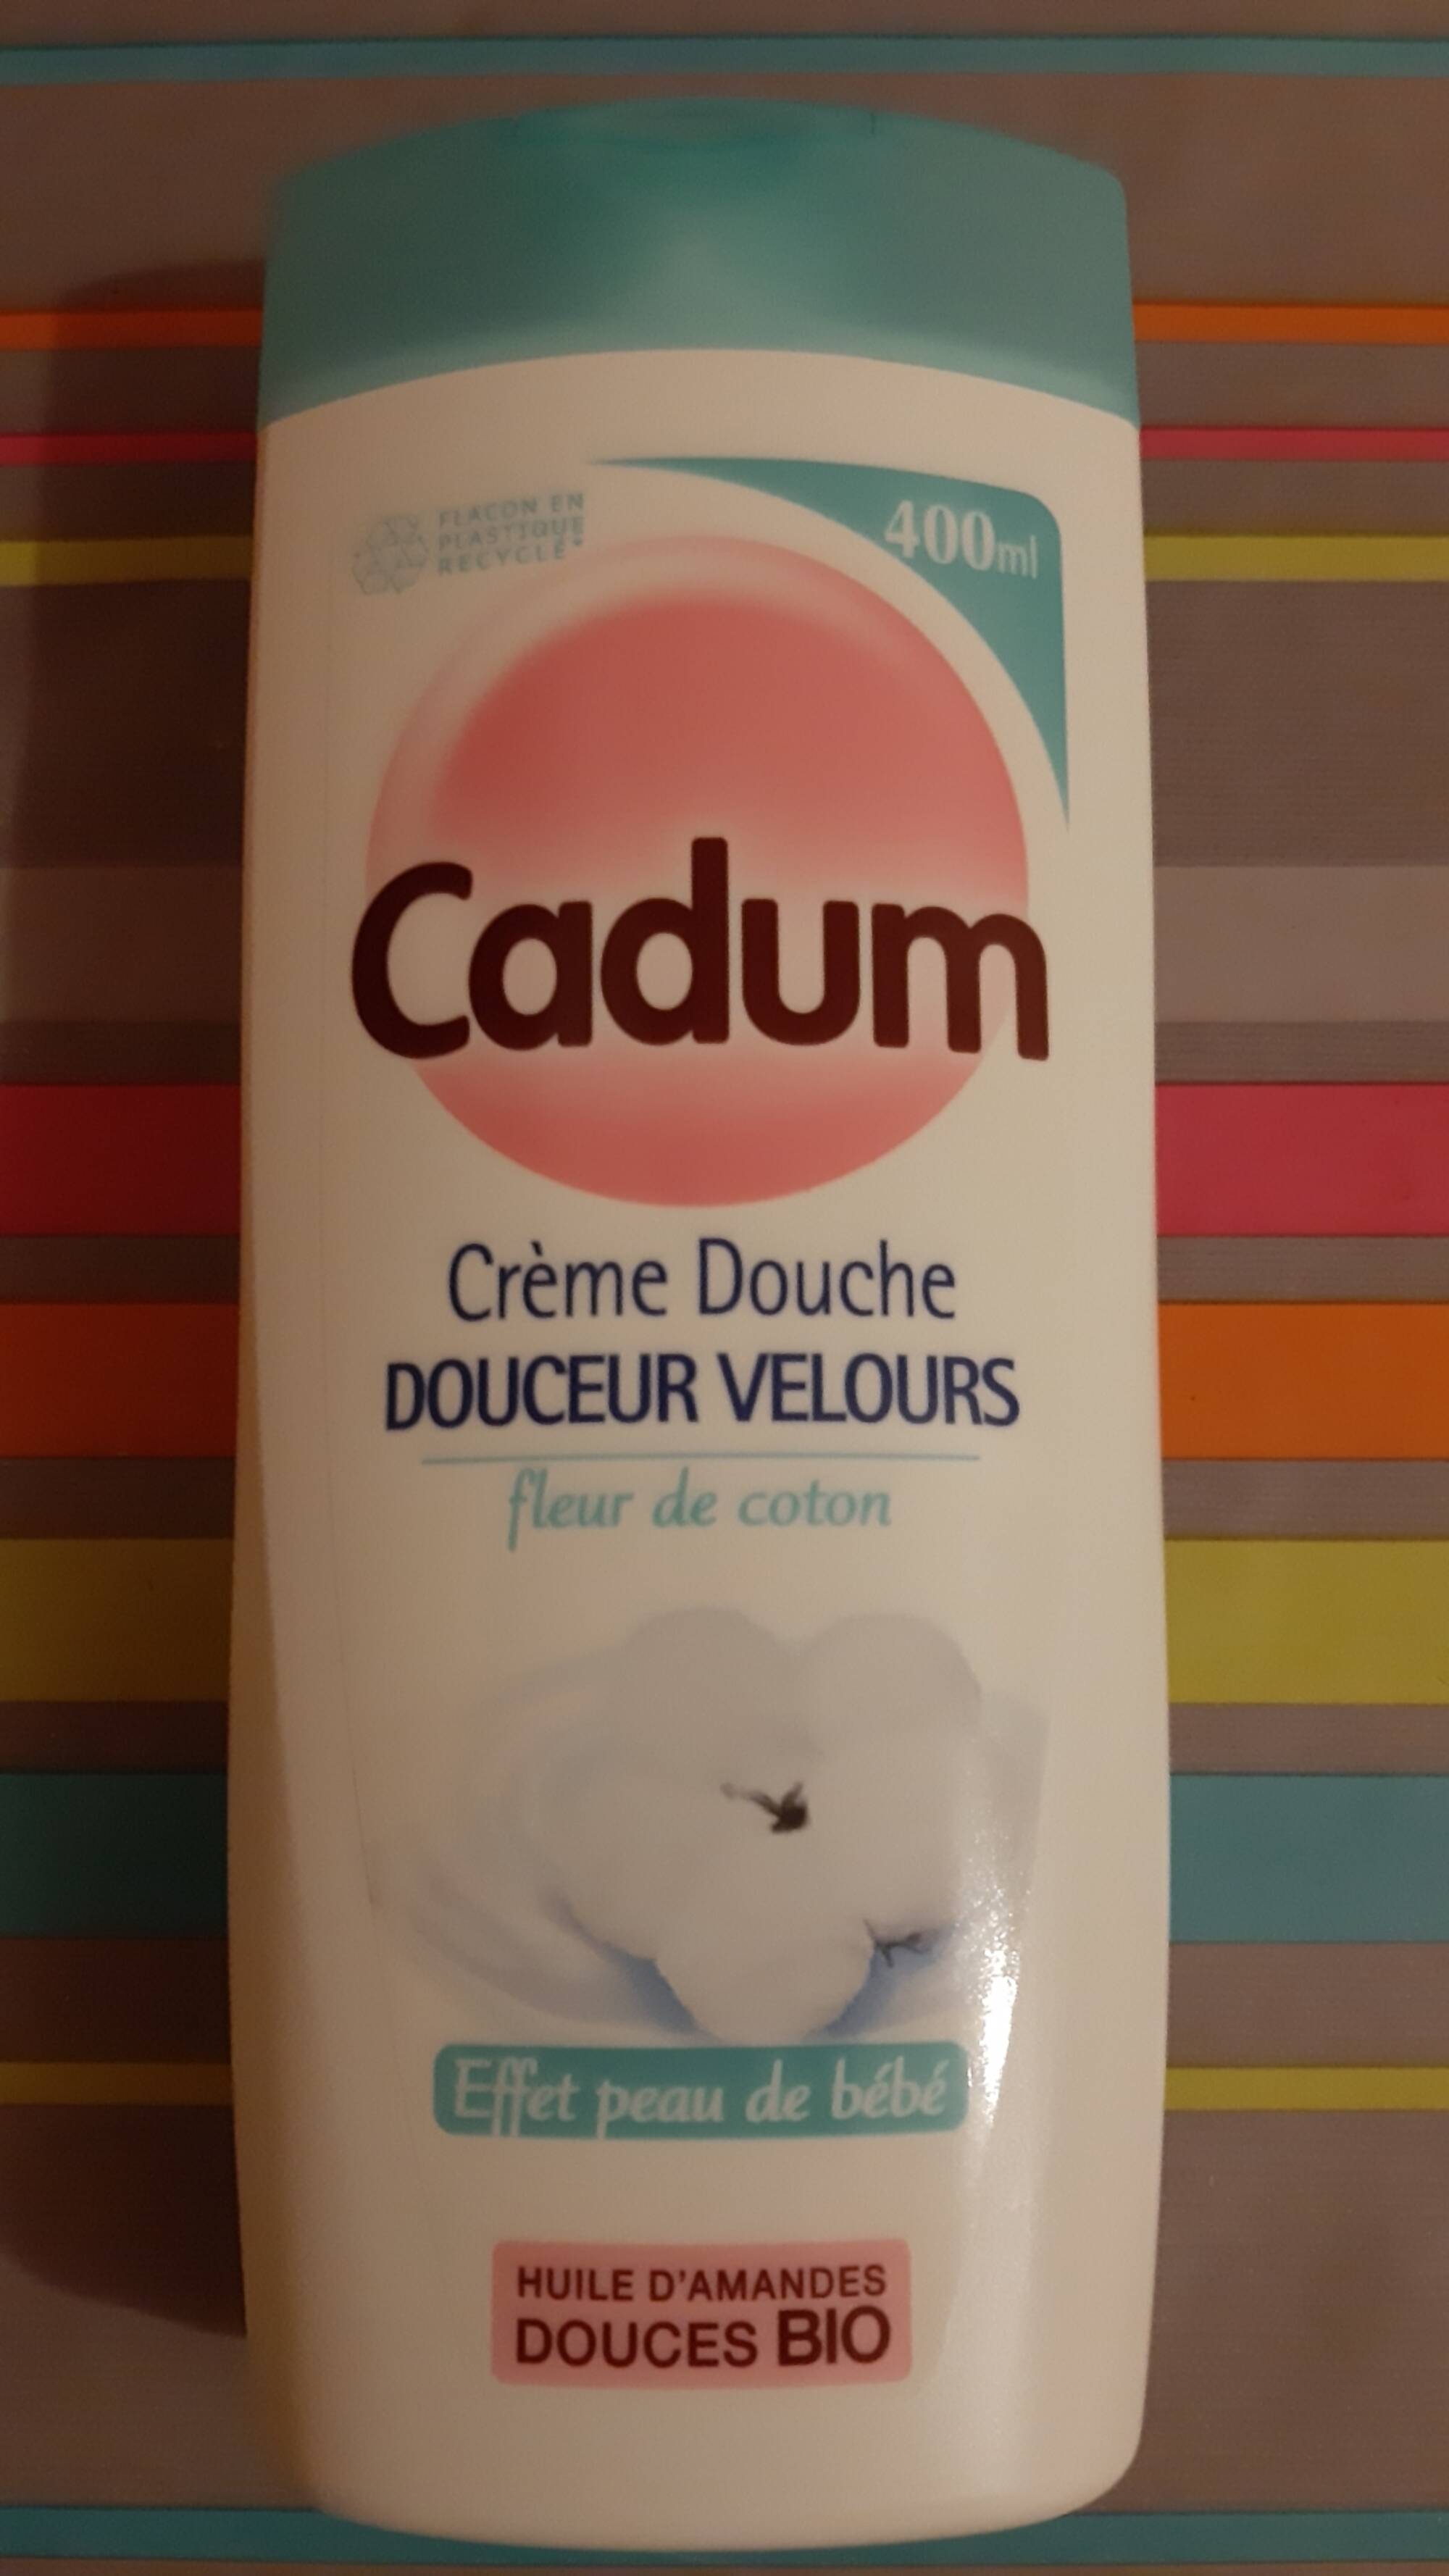 CADUM - Douceur velours - Crème douche Fleur de coton